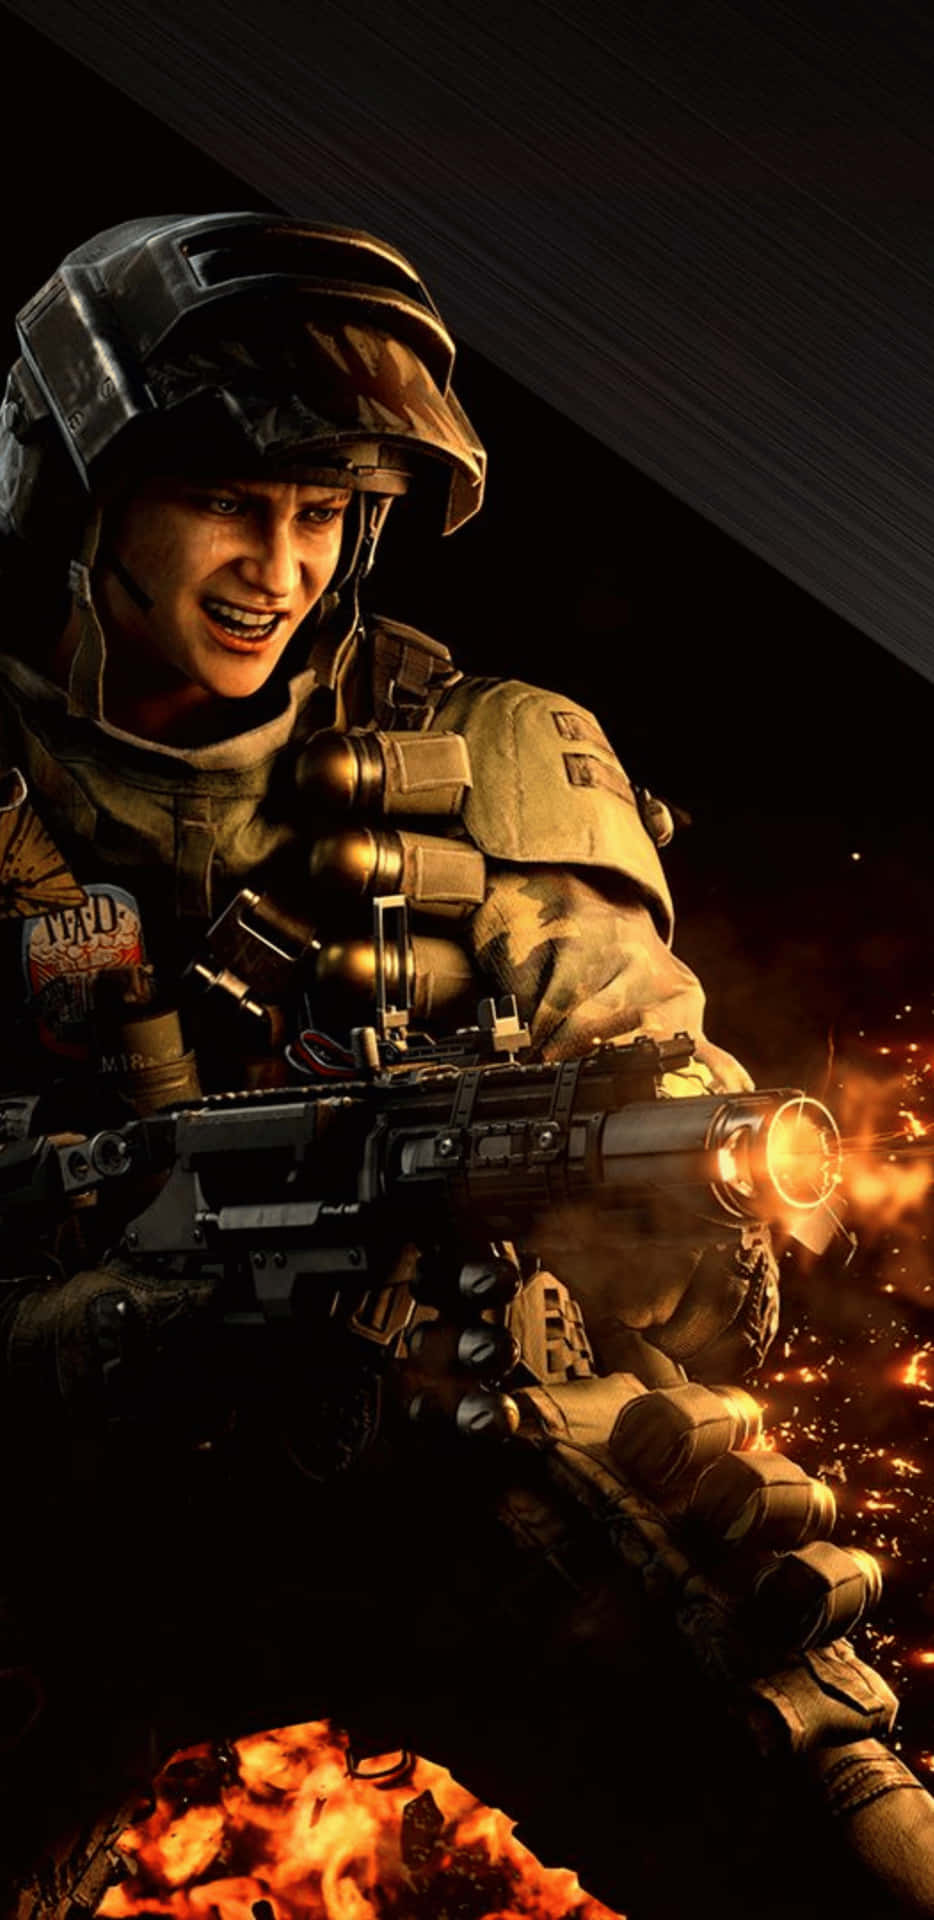 Bekämpafienden I Call Of Duty Black Ops 4 På Din Pixel 3xl Genom Att Välja Rätt Bakgrundsbild För Din Dator Eller Mobiltelefon.